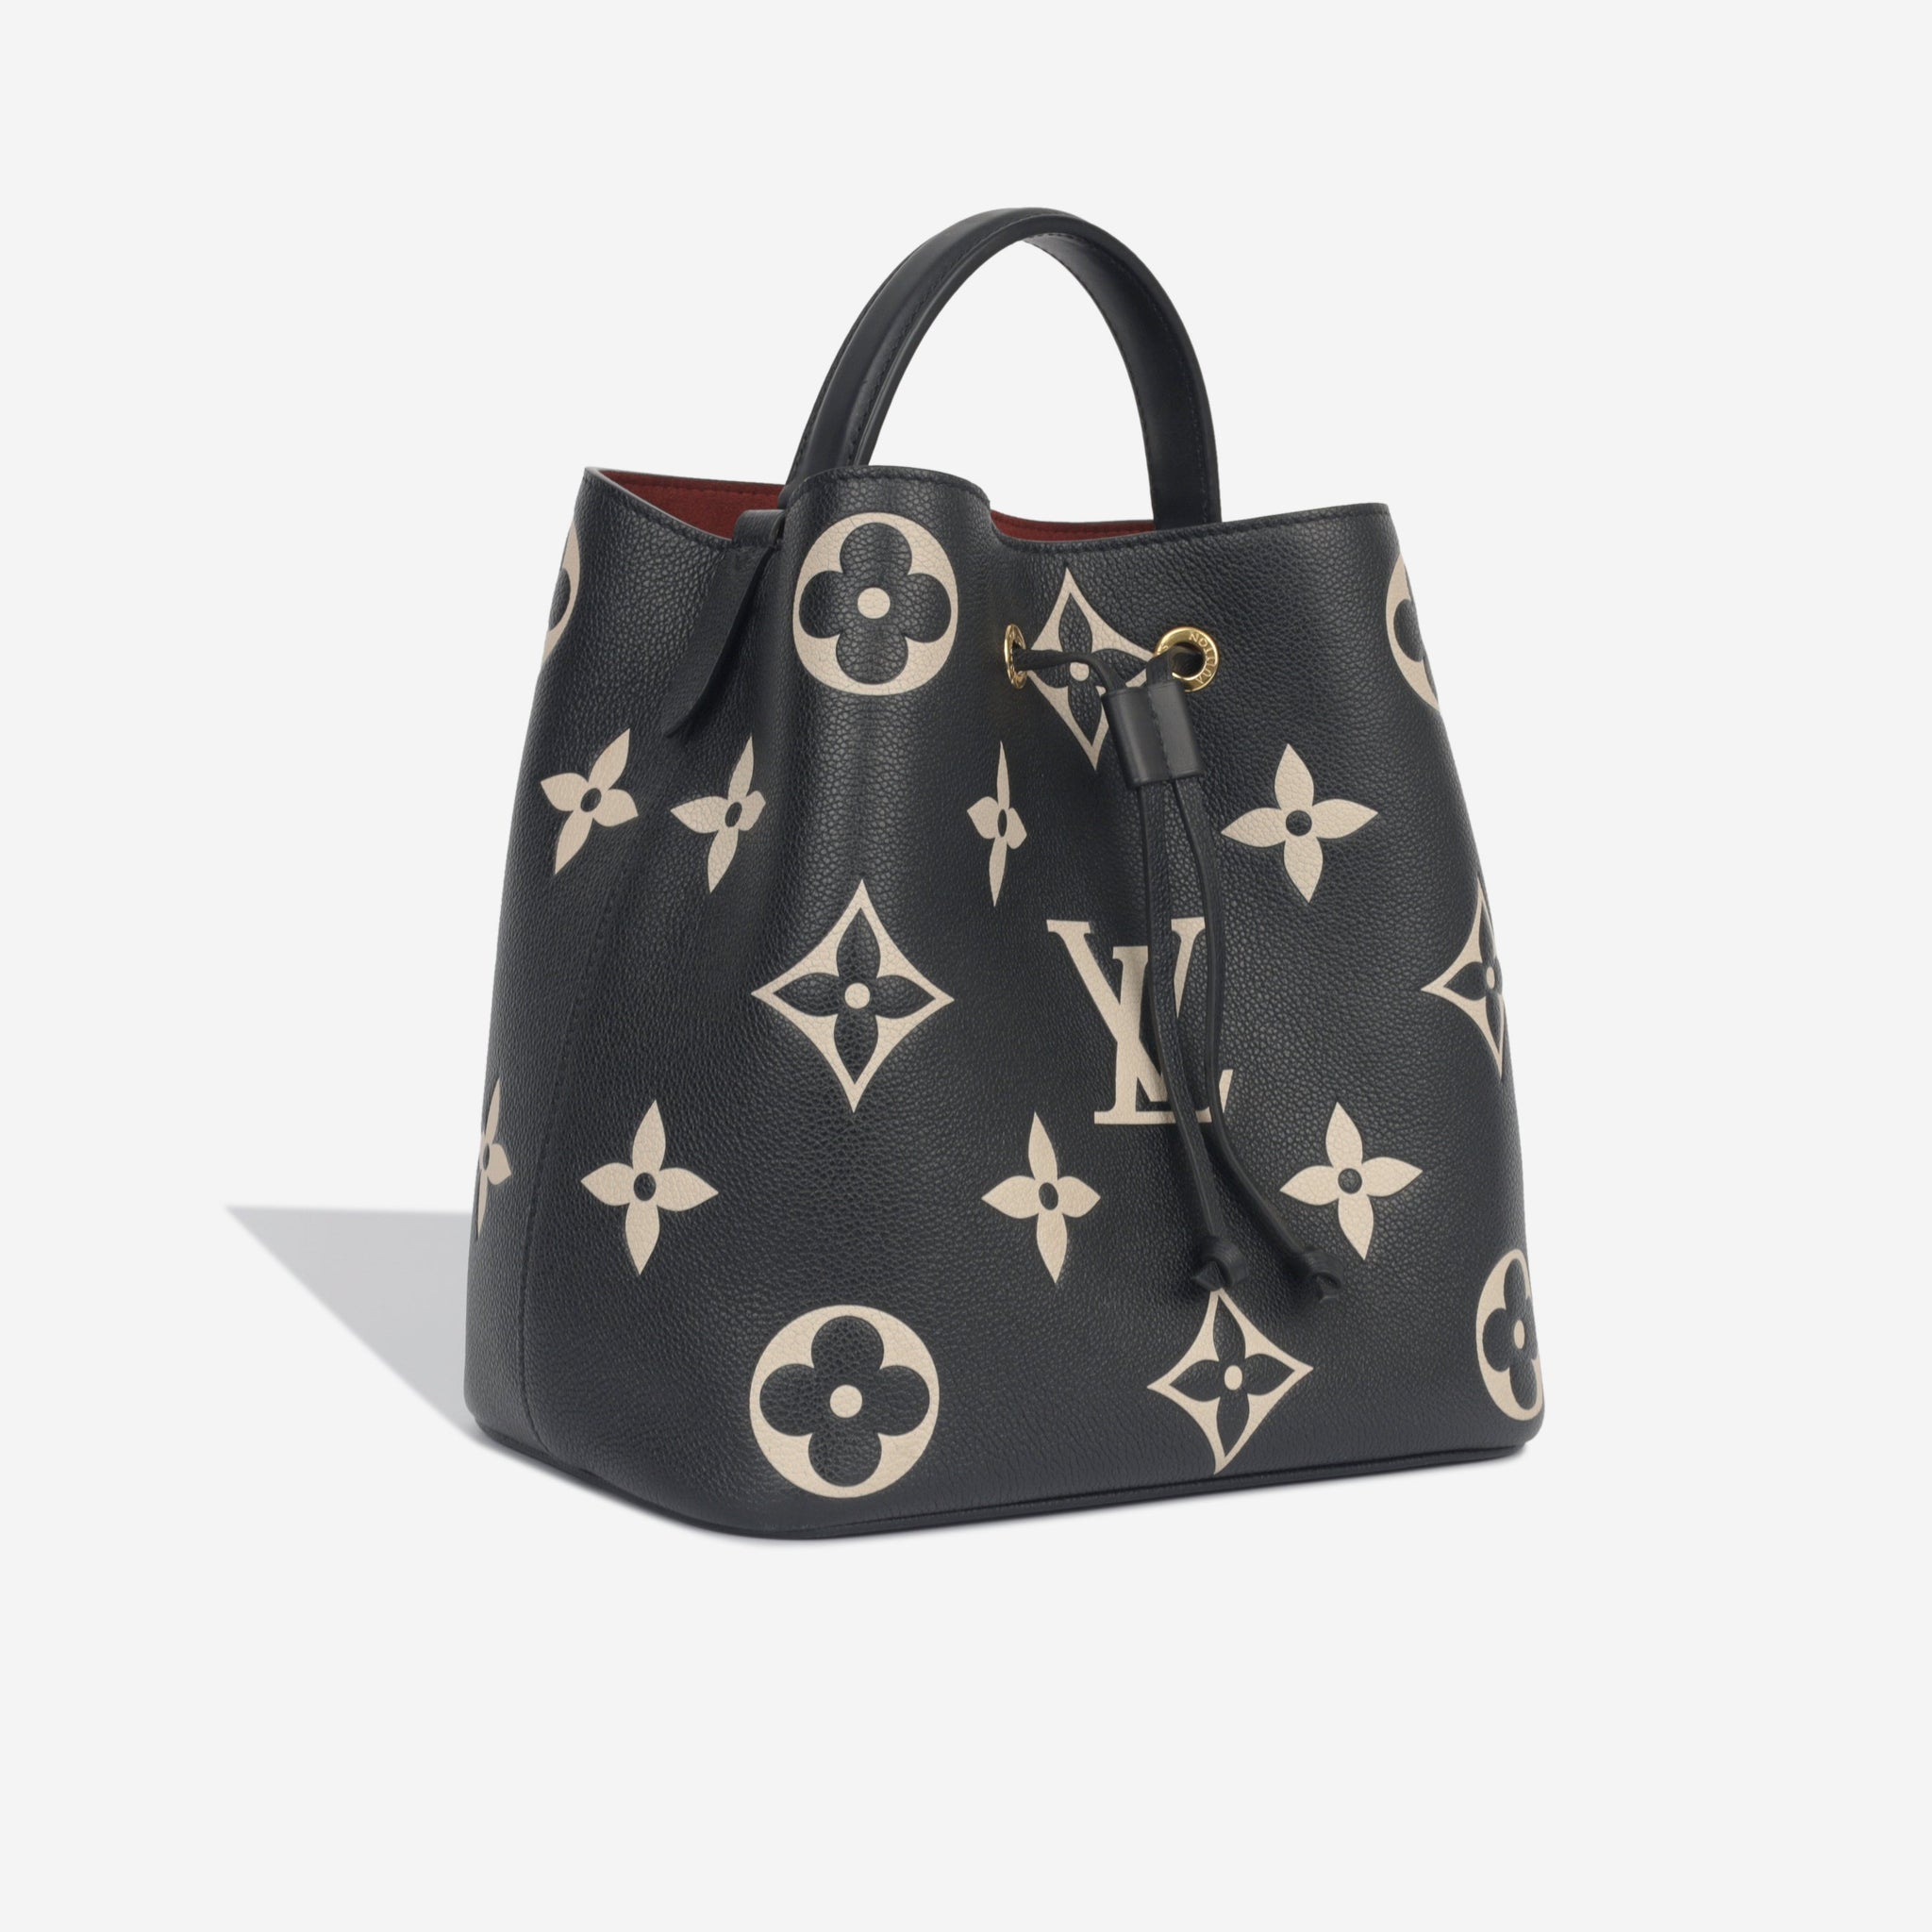 Louis Vuitton - Neo Noe Bucket Bag - Bicolour Empreinte - GHW - Excellent